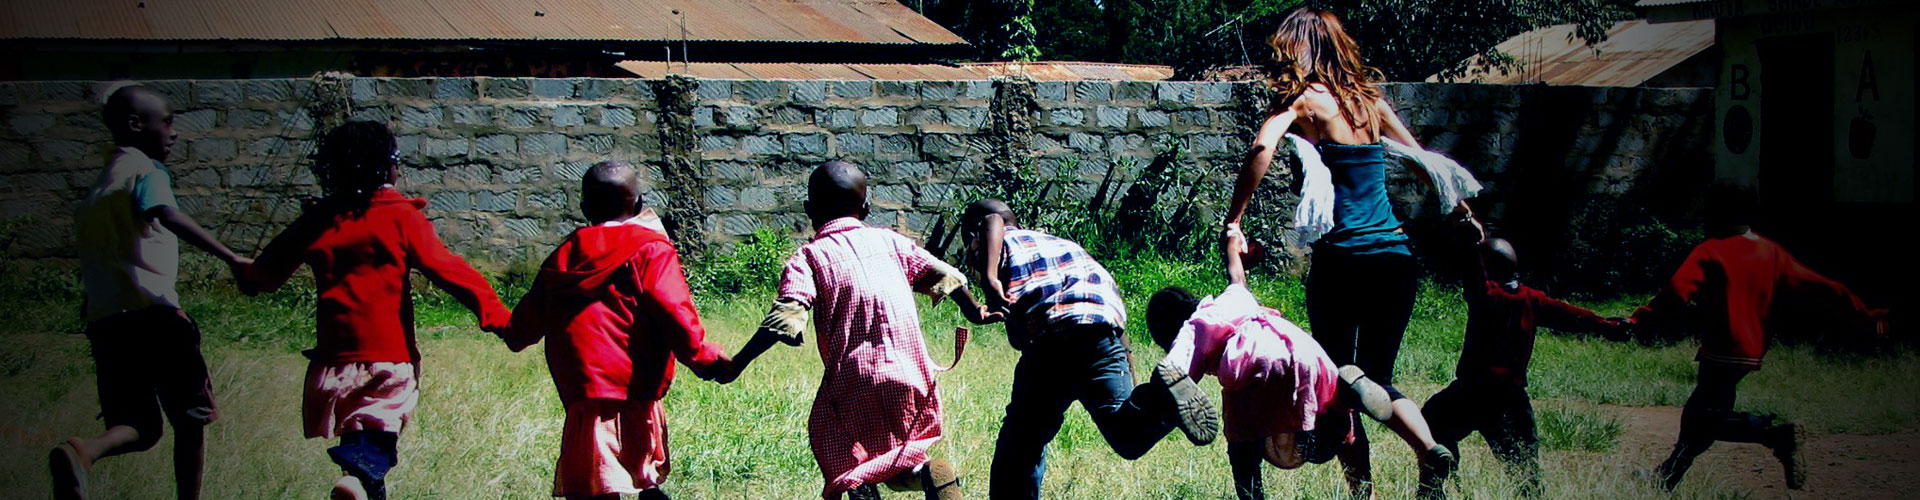 Volunteer Teaching in Kenya